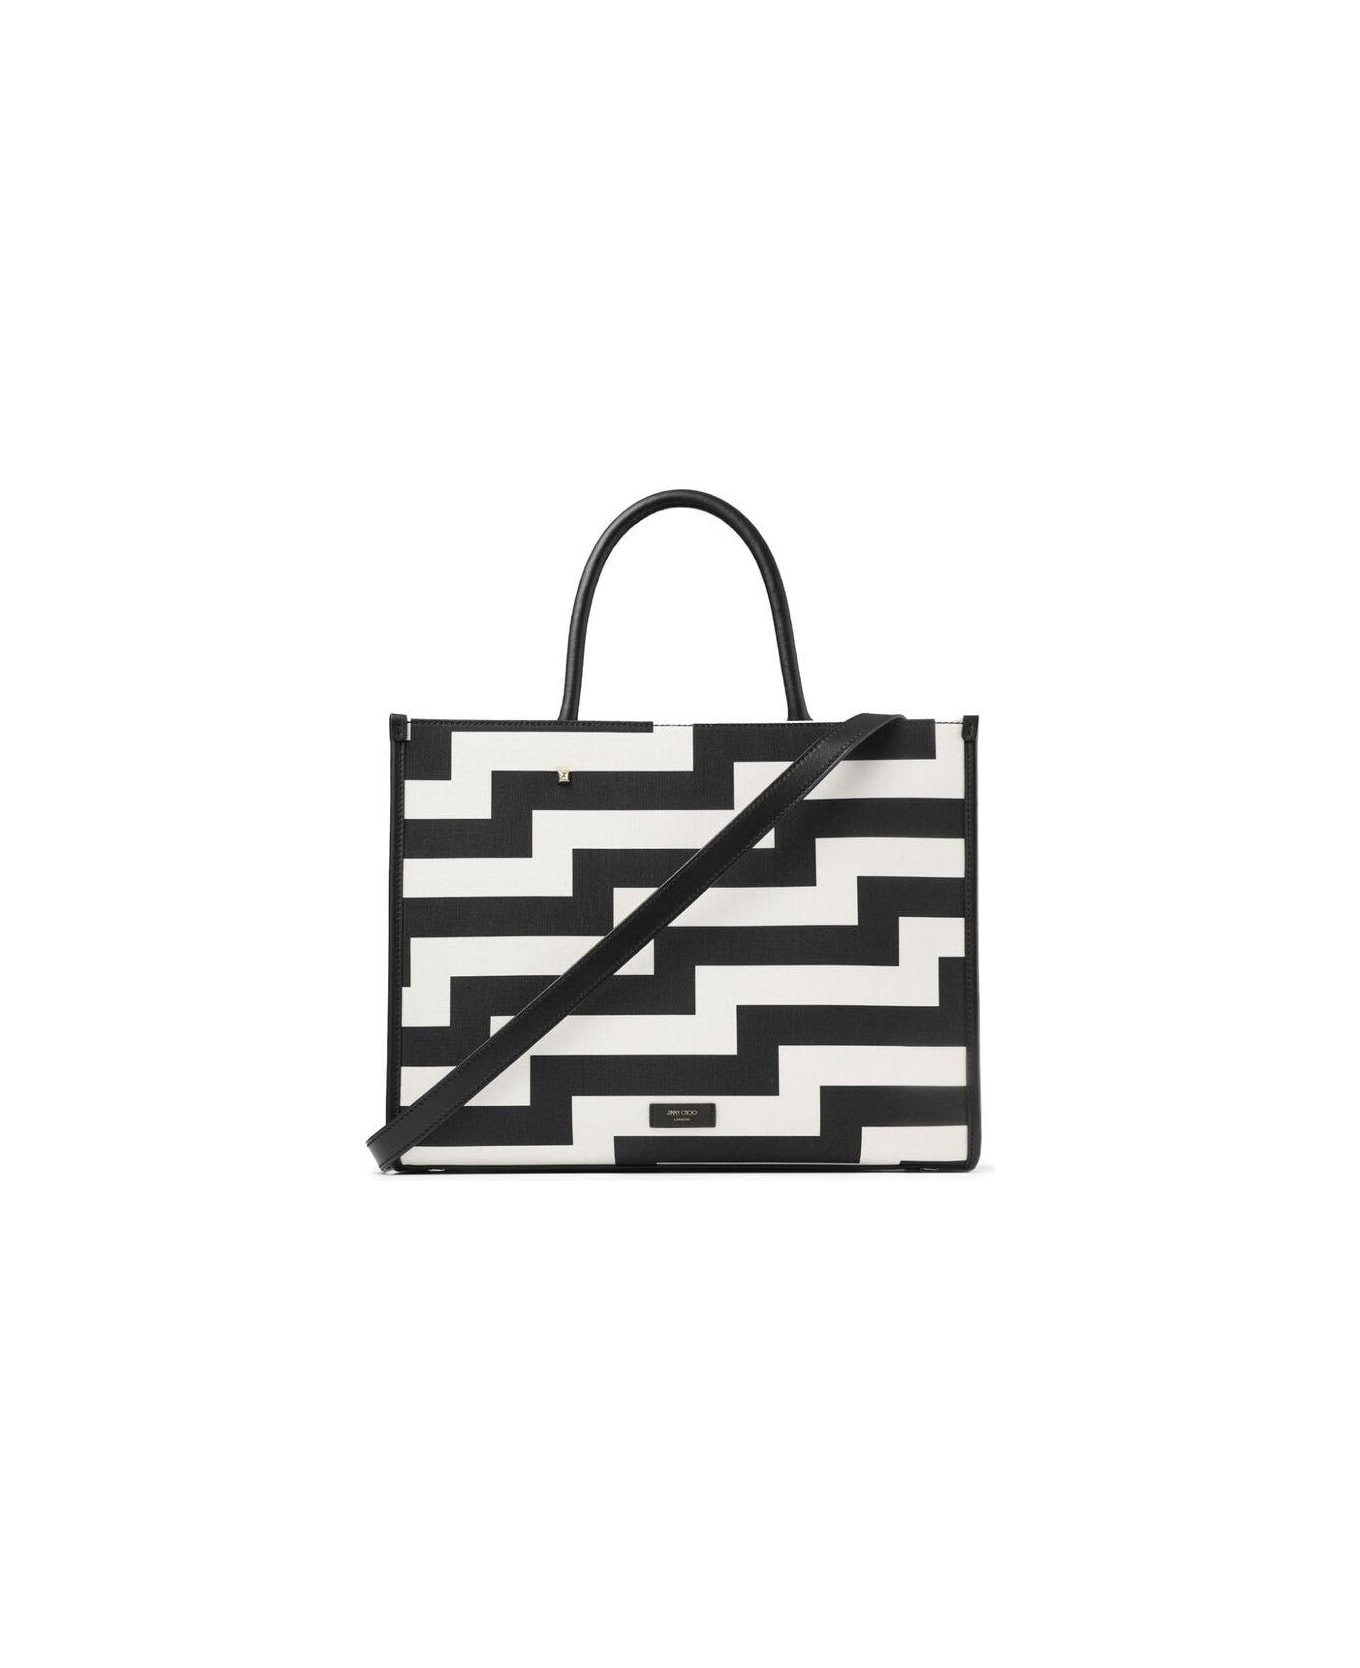 Jimmy Choo Avenue Logo Embroidered Tote Bag - WHITE/BLACK